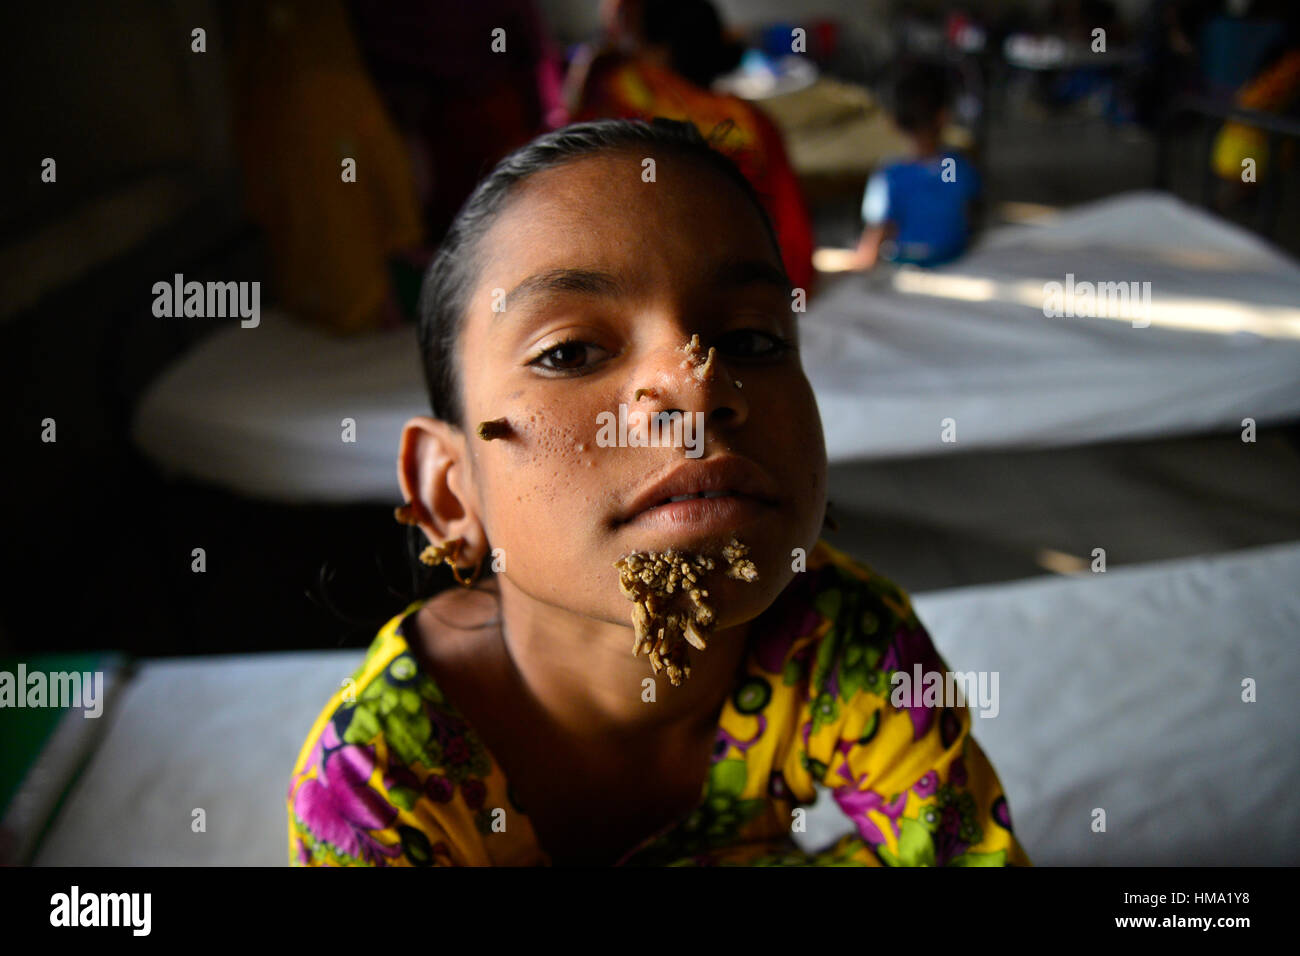 Paziente del Bangladesh Sahana Khatun, 10, in posa per una fotografia a Dhaka Medical College e ospedale. Il 1 febbraio 2017 una giovane ragazza del Bangladesh con corteccia-come le verruche crescente sul suo viso potrebbe essere la prima donna sempre afflitto da cosiddetti "tree sindrome uomo', i medici studiano la condizione rara detto gennaio 31. Dieci anni Khatun Sahana ha la spia crescite nodose spuntano dal suo mento, orecchio e naso, ma i medici a Dhaka Medical College Hospital sono ancora conducendo dei test per stabilire se essa ha il singolare disturbo della pelle. Foto Stock